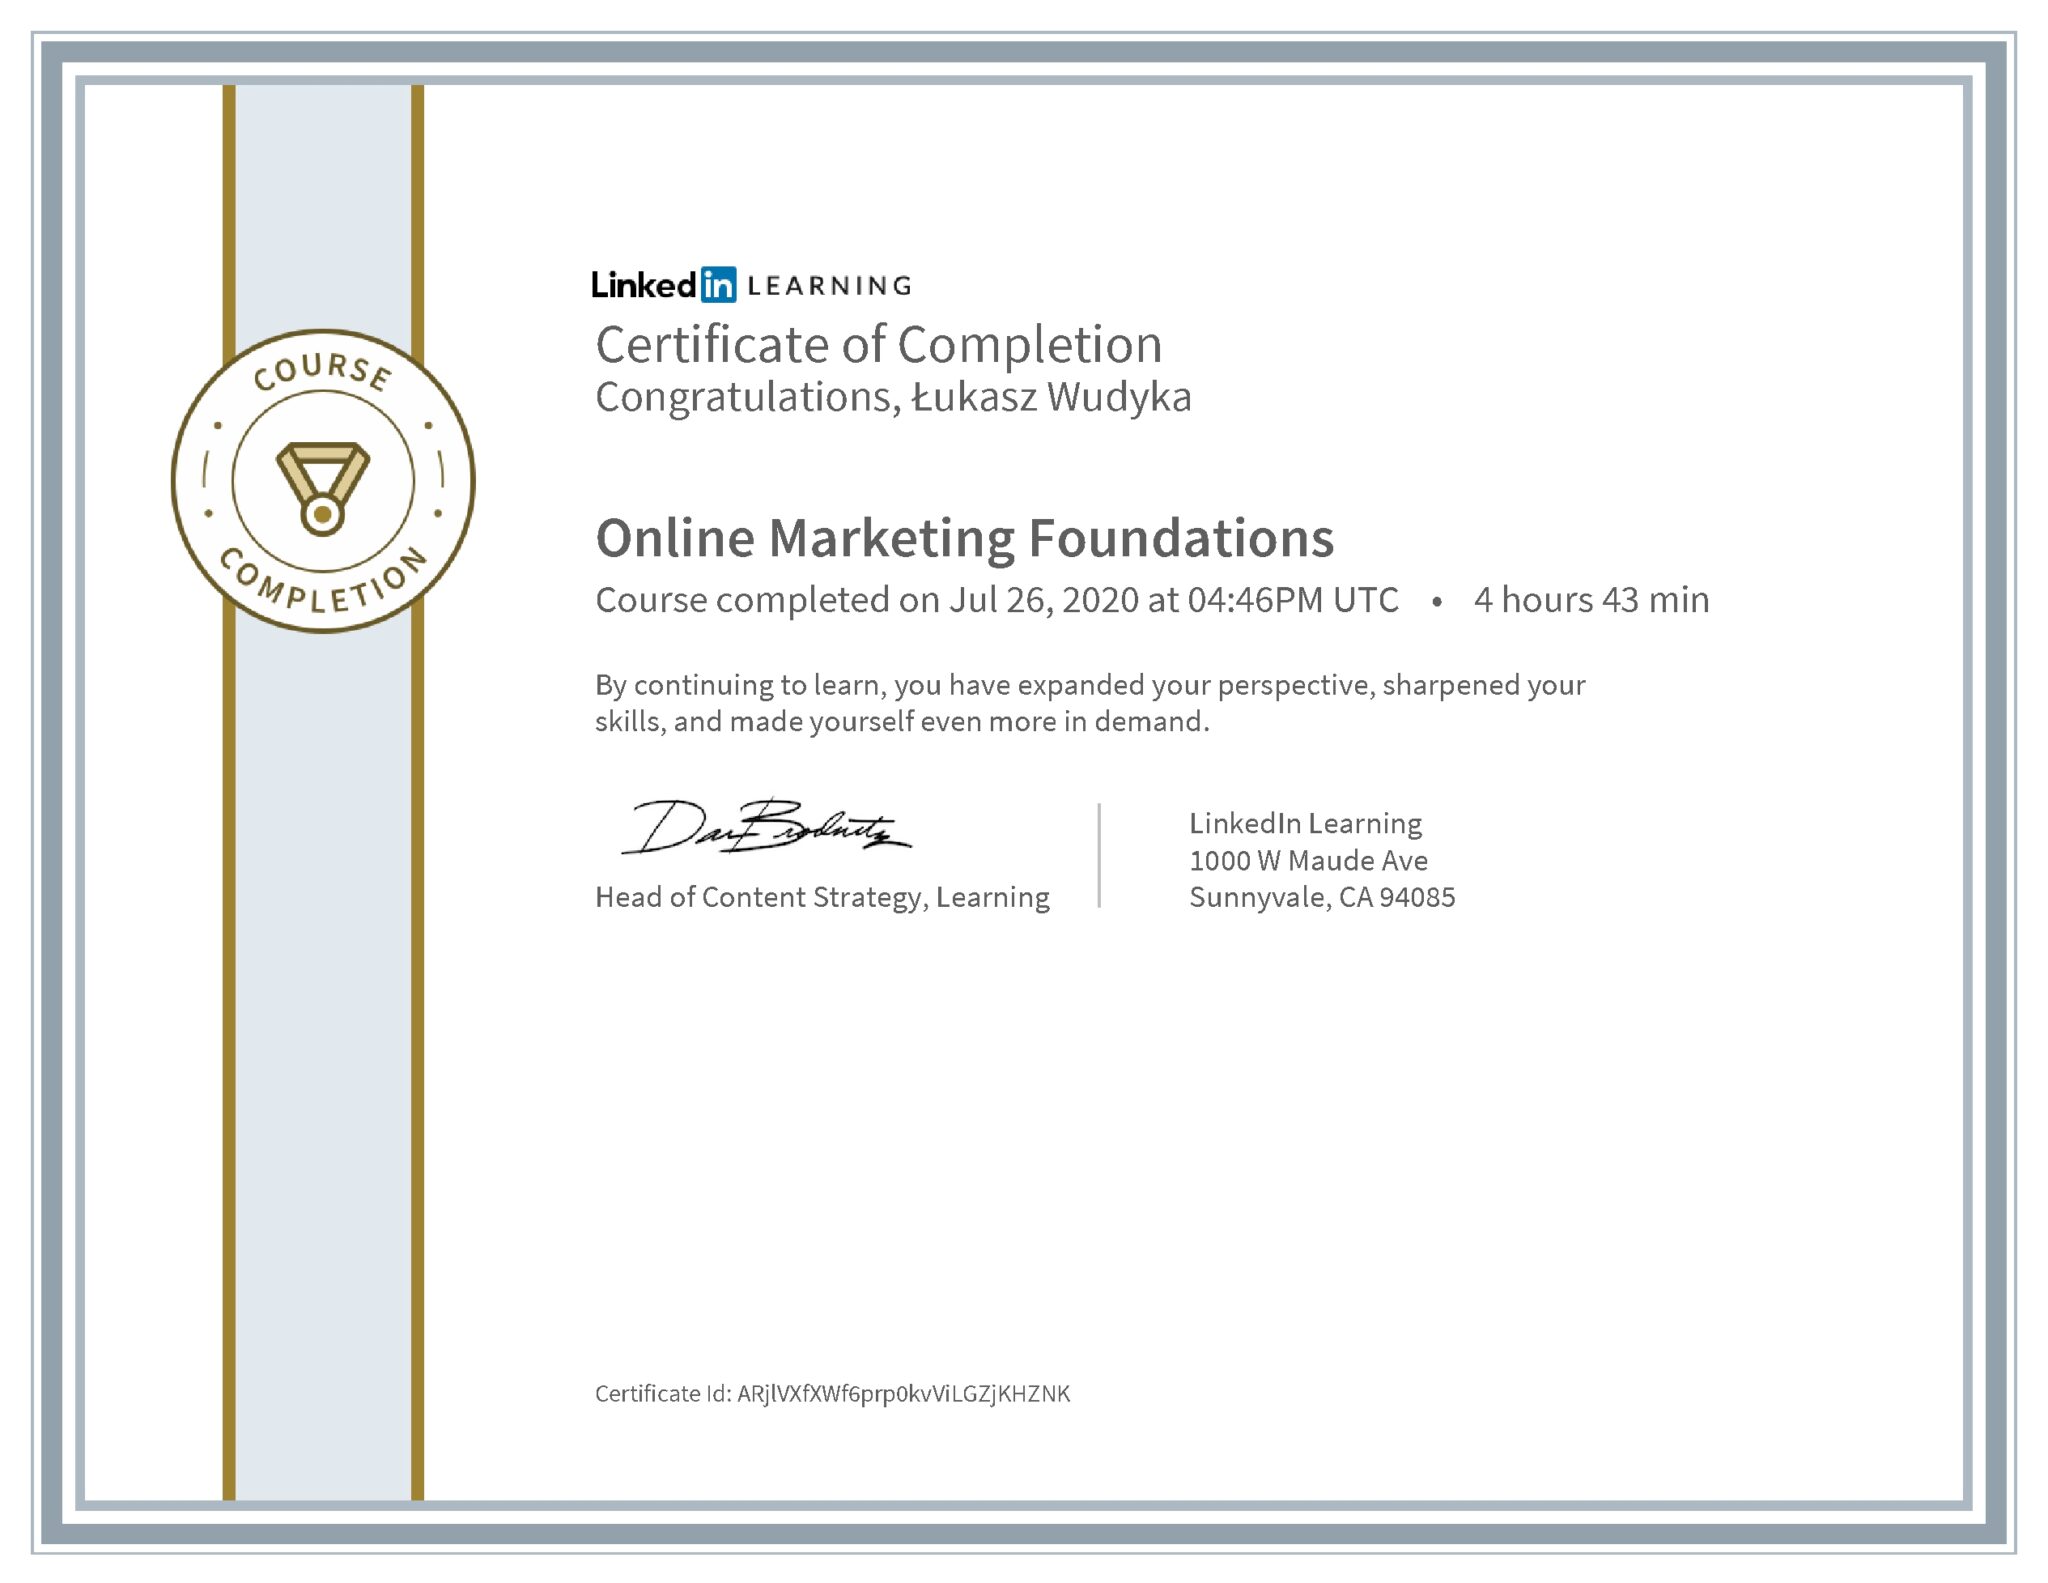 Łukasz Wudyka certyfikat LinkedIn Online Marketing Foundations